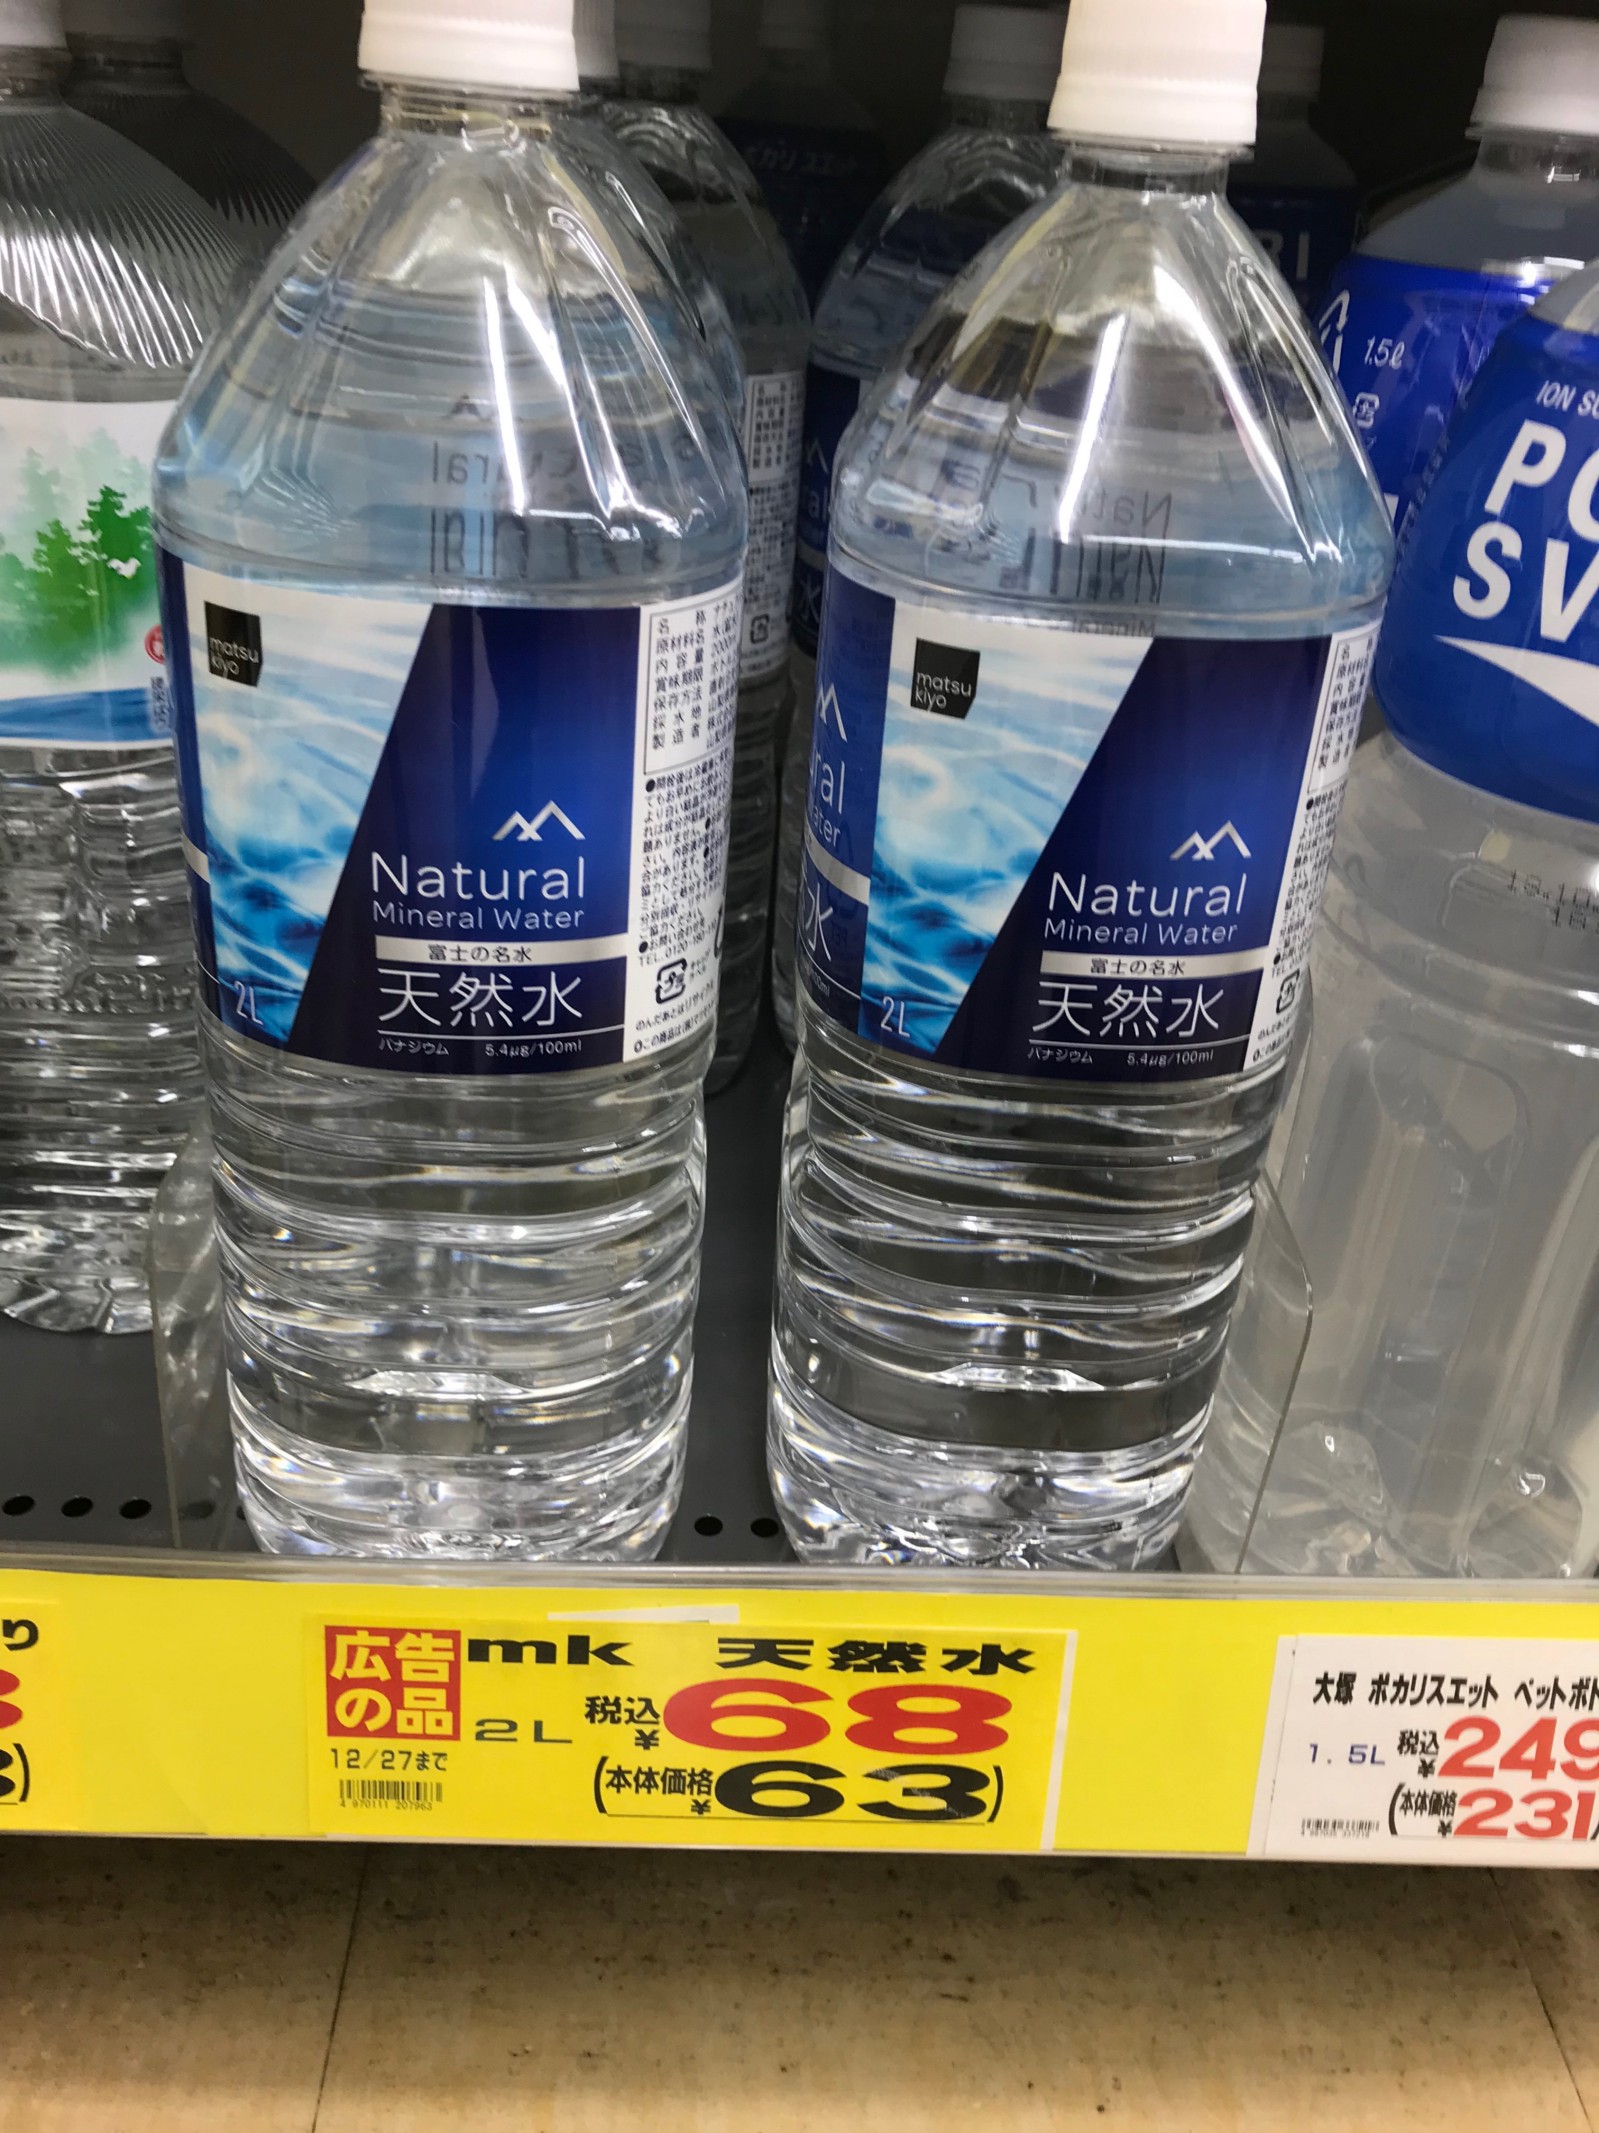 Cheap mineral water sold at Matsumoto Kiyoshi